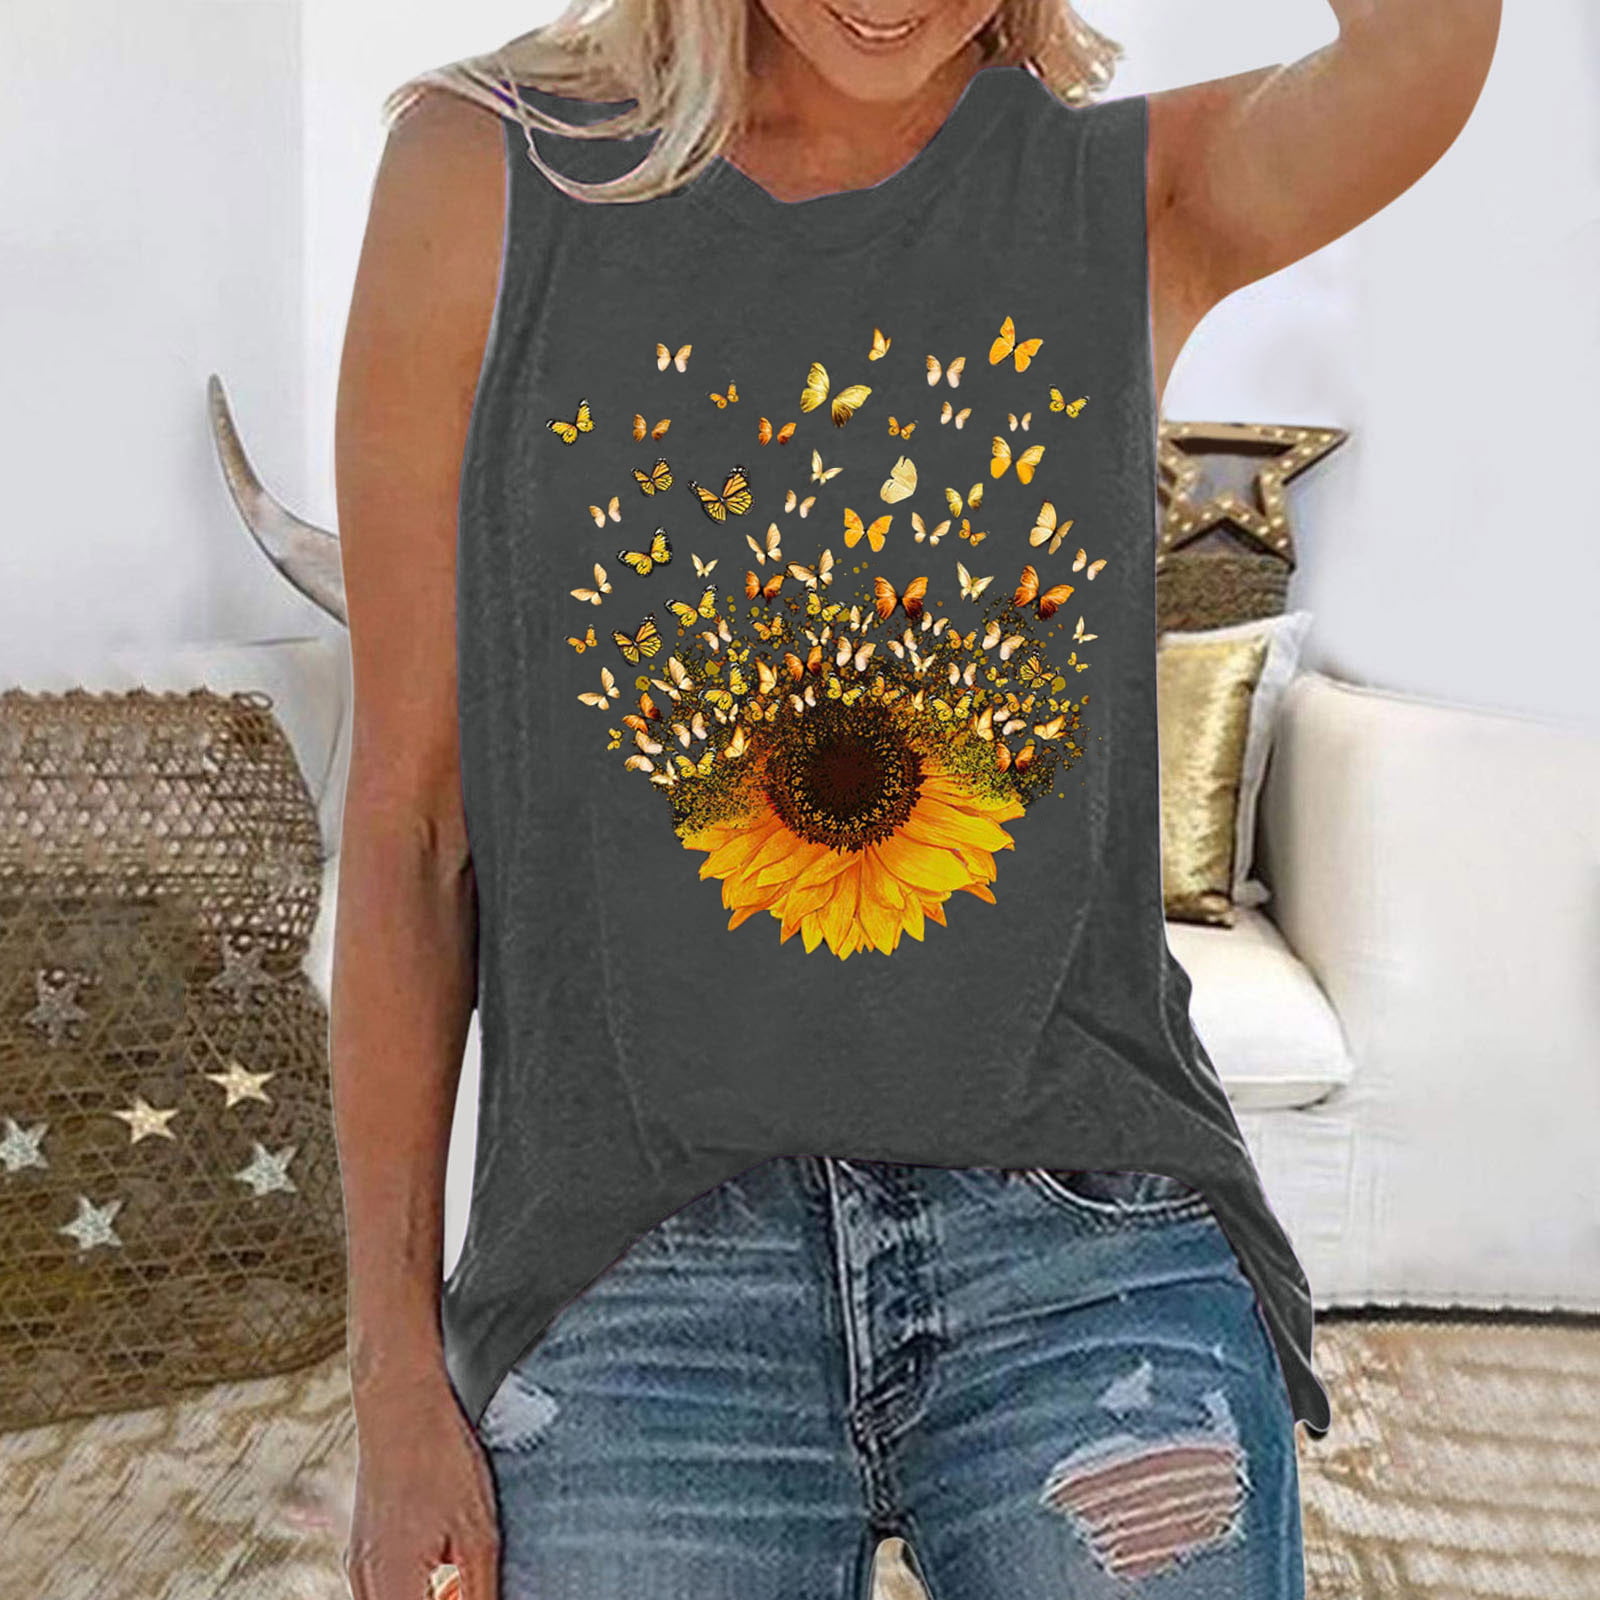 Womens Sunflower Tank Tops Crew Neck Sleeveless Tee Shirt Vest Casual Summer Blouse Tops 